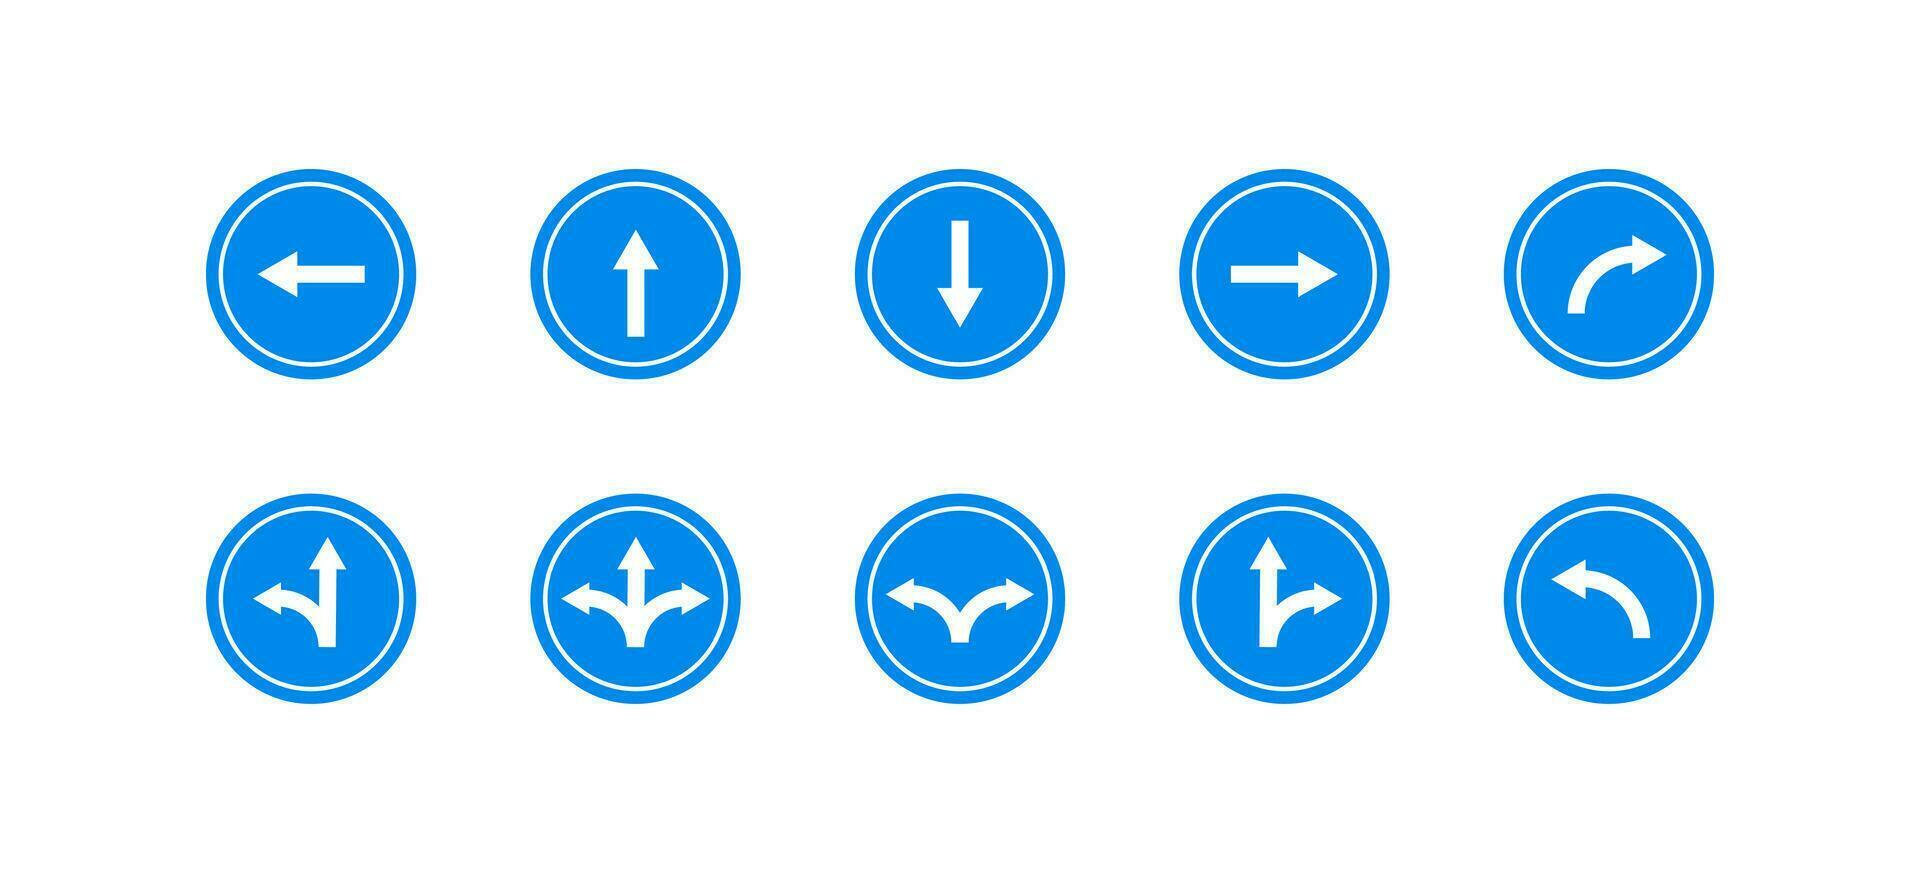 väg pilar pekare tecken ikon uppsättning. riktning väg pil tecken vektor